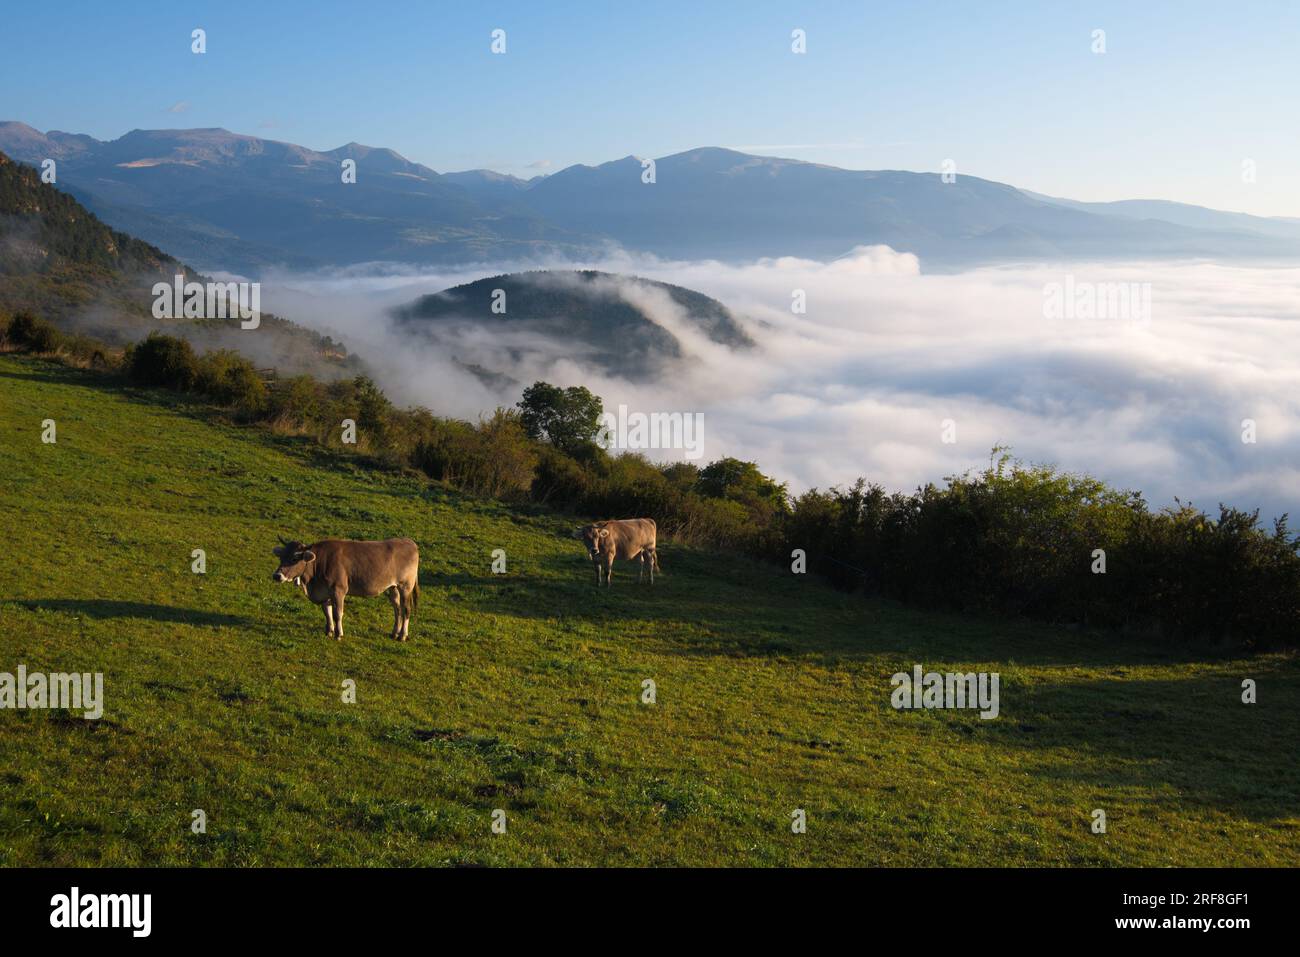 A mountain meadow with grazing cows and a sea of clouds below. Un prado de montaña con vacas pastando y por debajo se ve un mar de nubes. Stock Photo